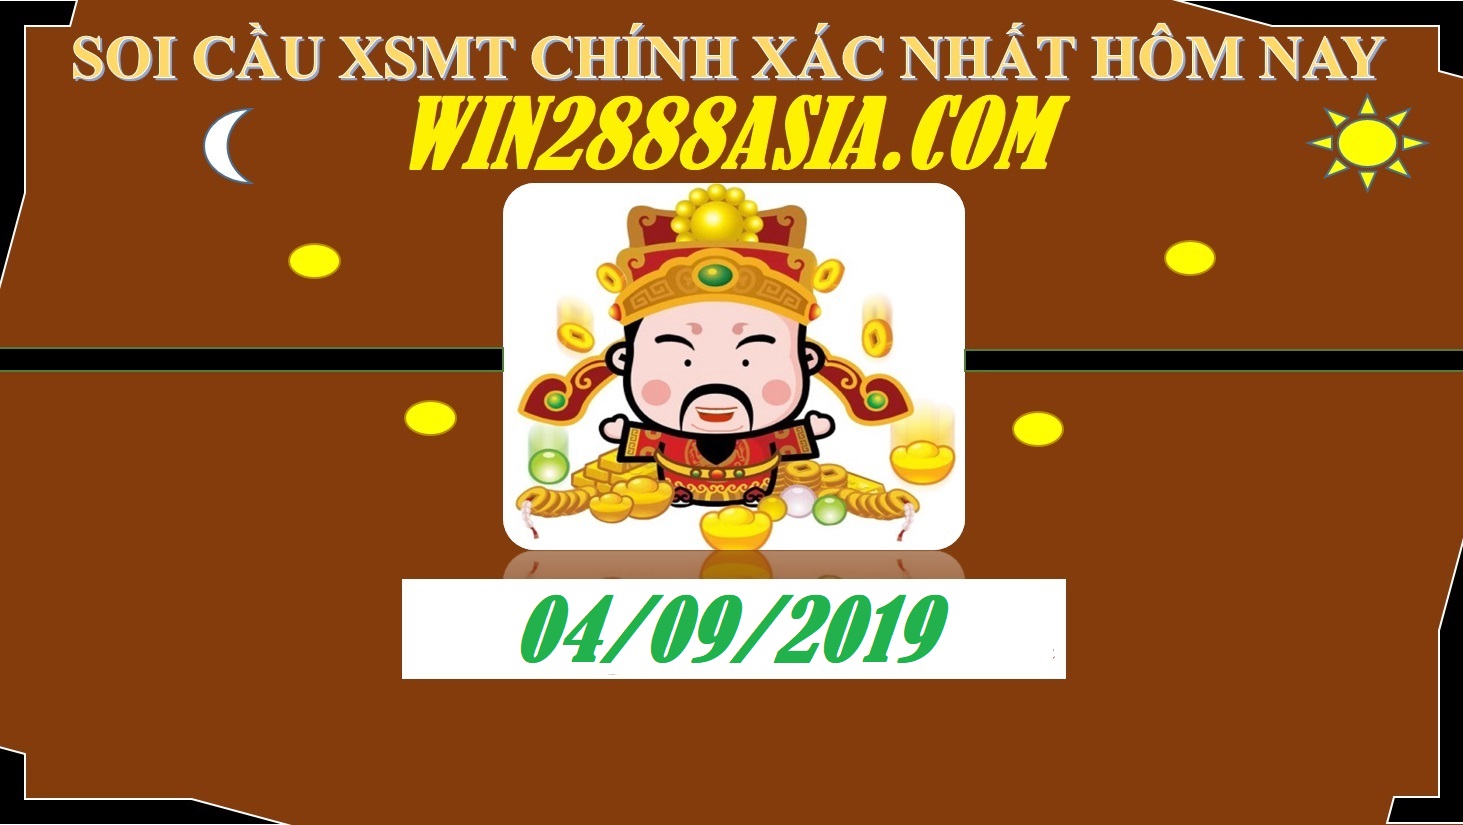 Soi cầu XSMT 4-9-2019 Win2888